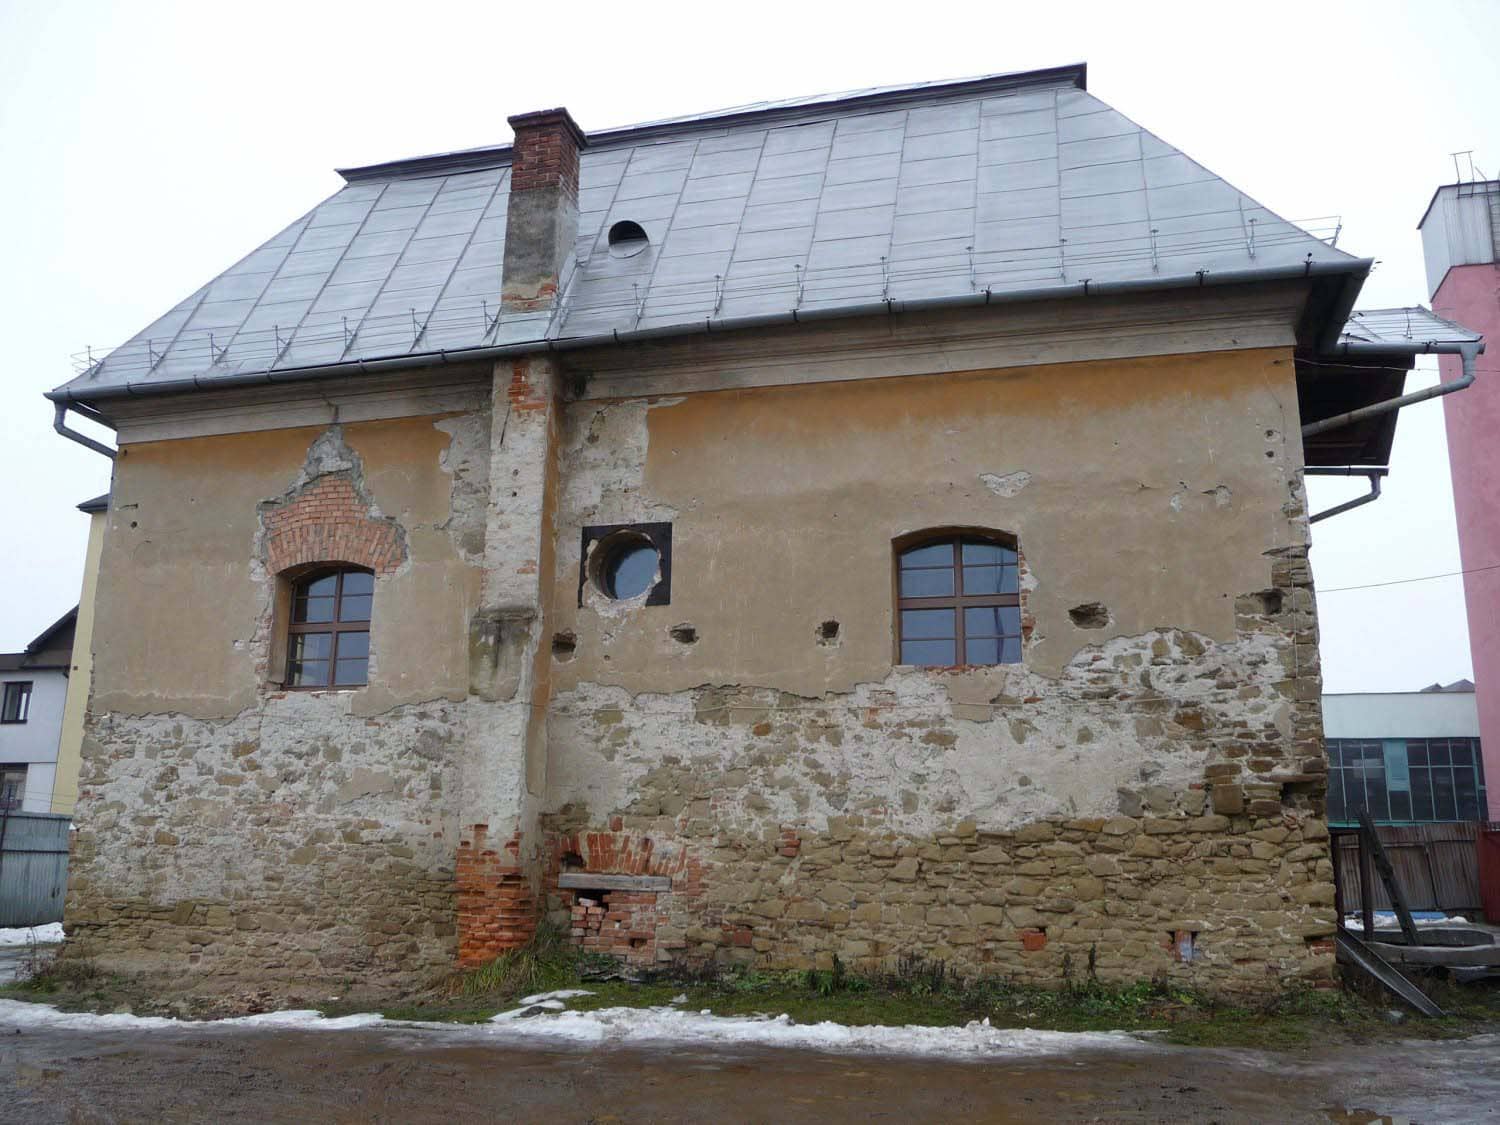 Exterior of Bardejov Old Synagogue showing damage before restoration